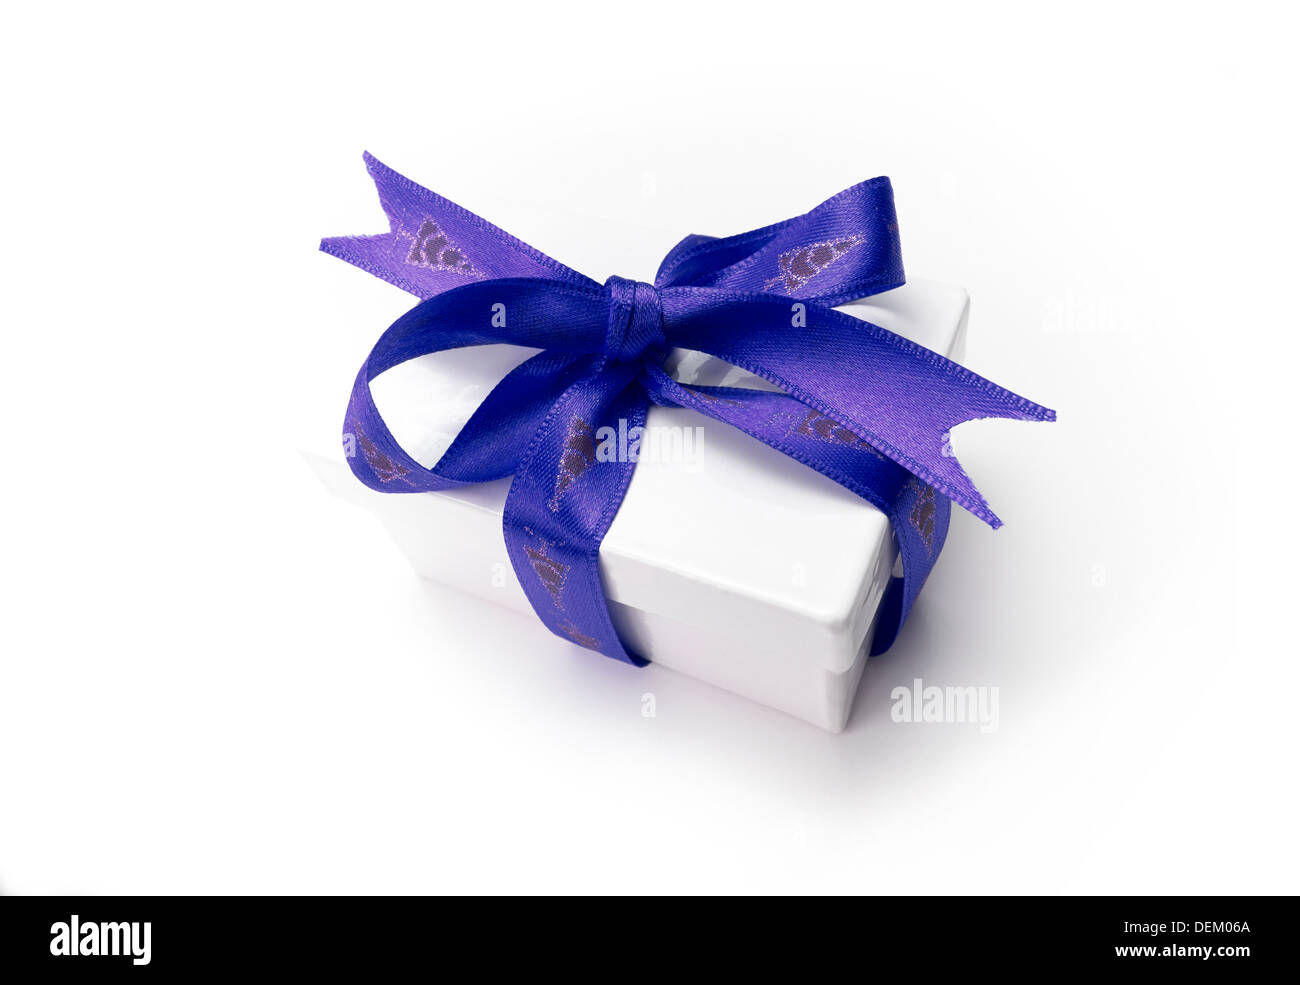 Verpackte Weihnachtsgeschenk mit einem bunten blaues Band und Bogen auf einem weißen Hintergrund. Stockfoto